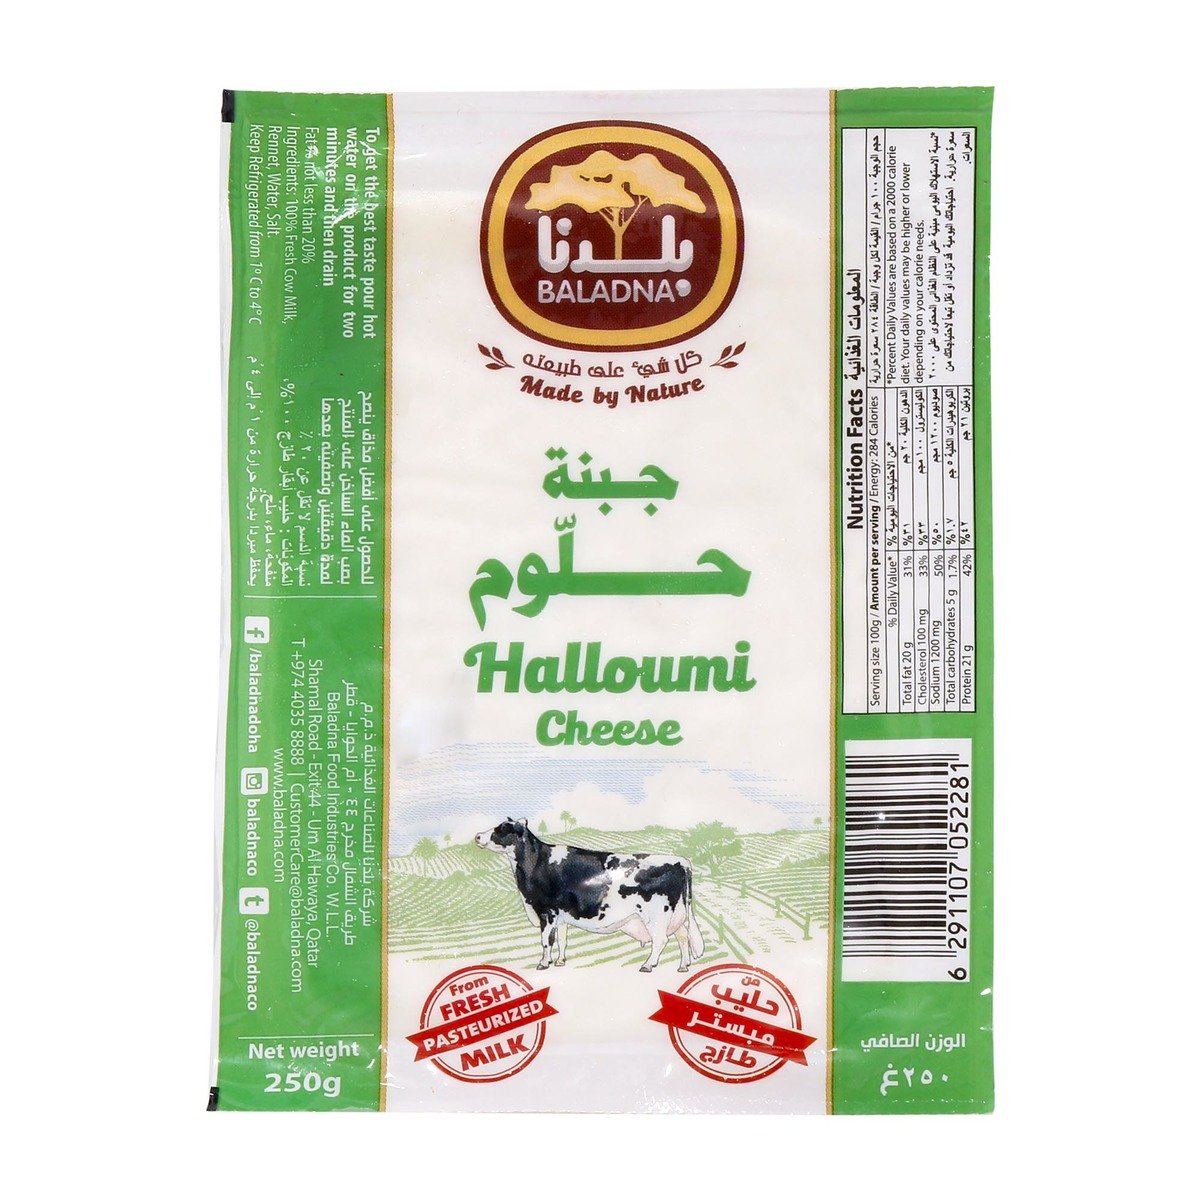 Baladna Halloumi Cheese 250g